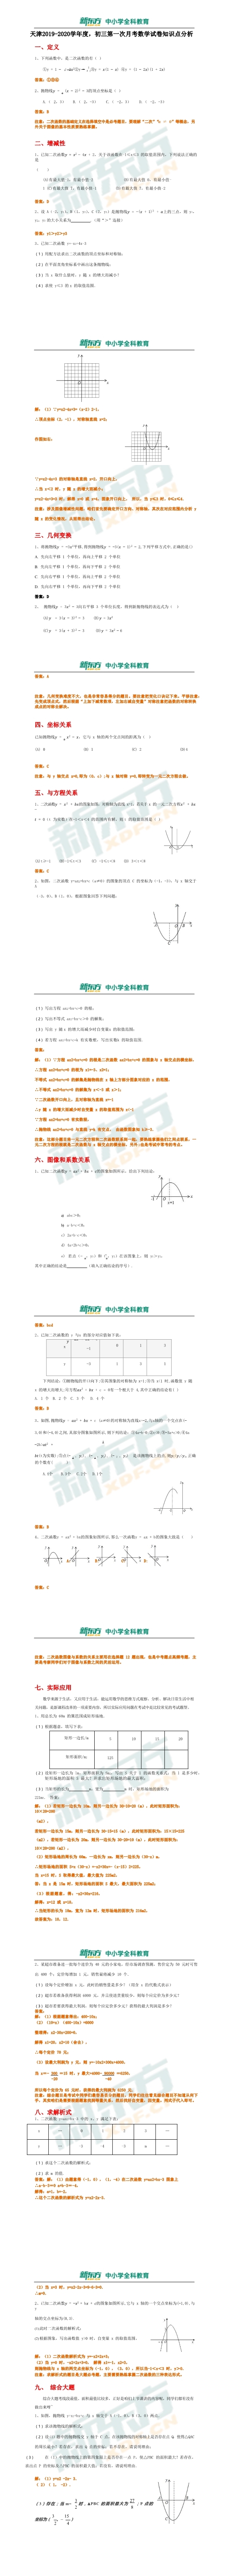 初三数学试卷,天津第一次月考初三数学试卷知识点分析